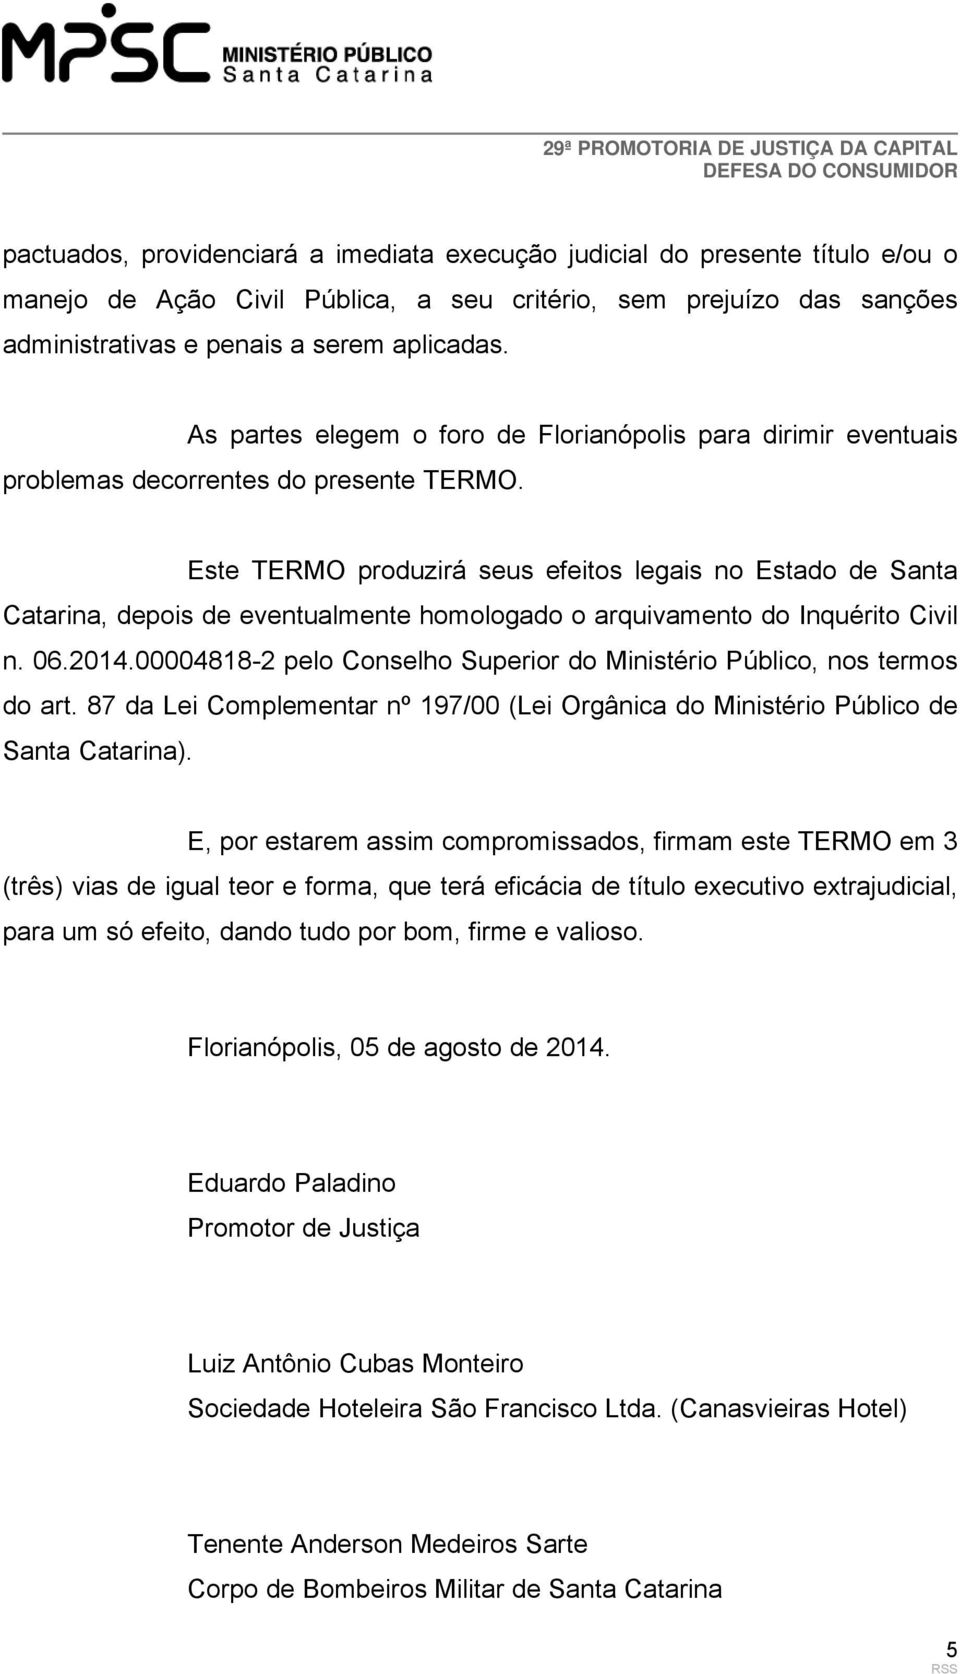 Este TERMO produzirá seus efeitos legais no Estado de Santa Catarina, depois de eventualmente homologado o arquivamento do Inquérito Civil n. 06.2014.